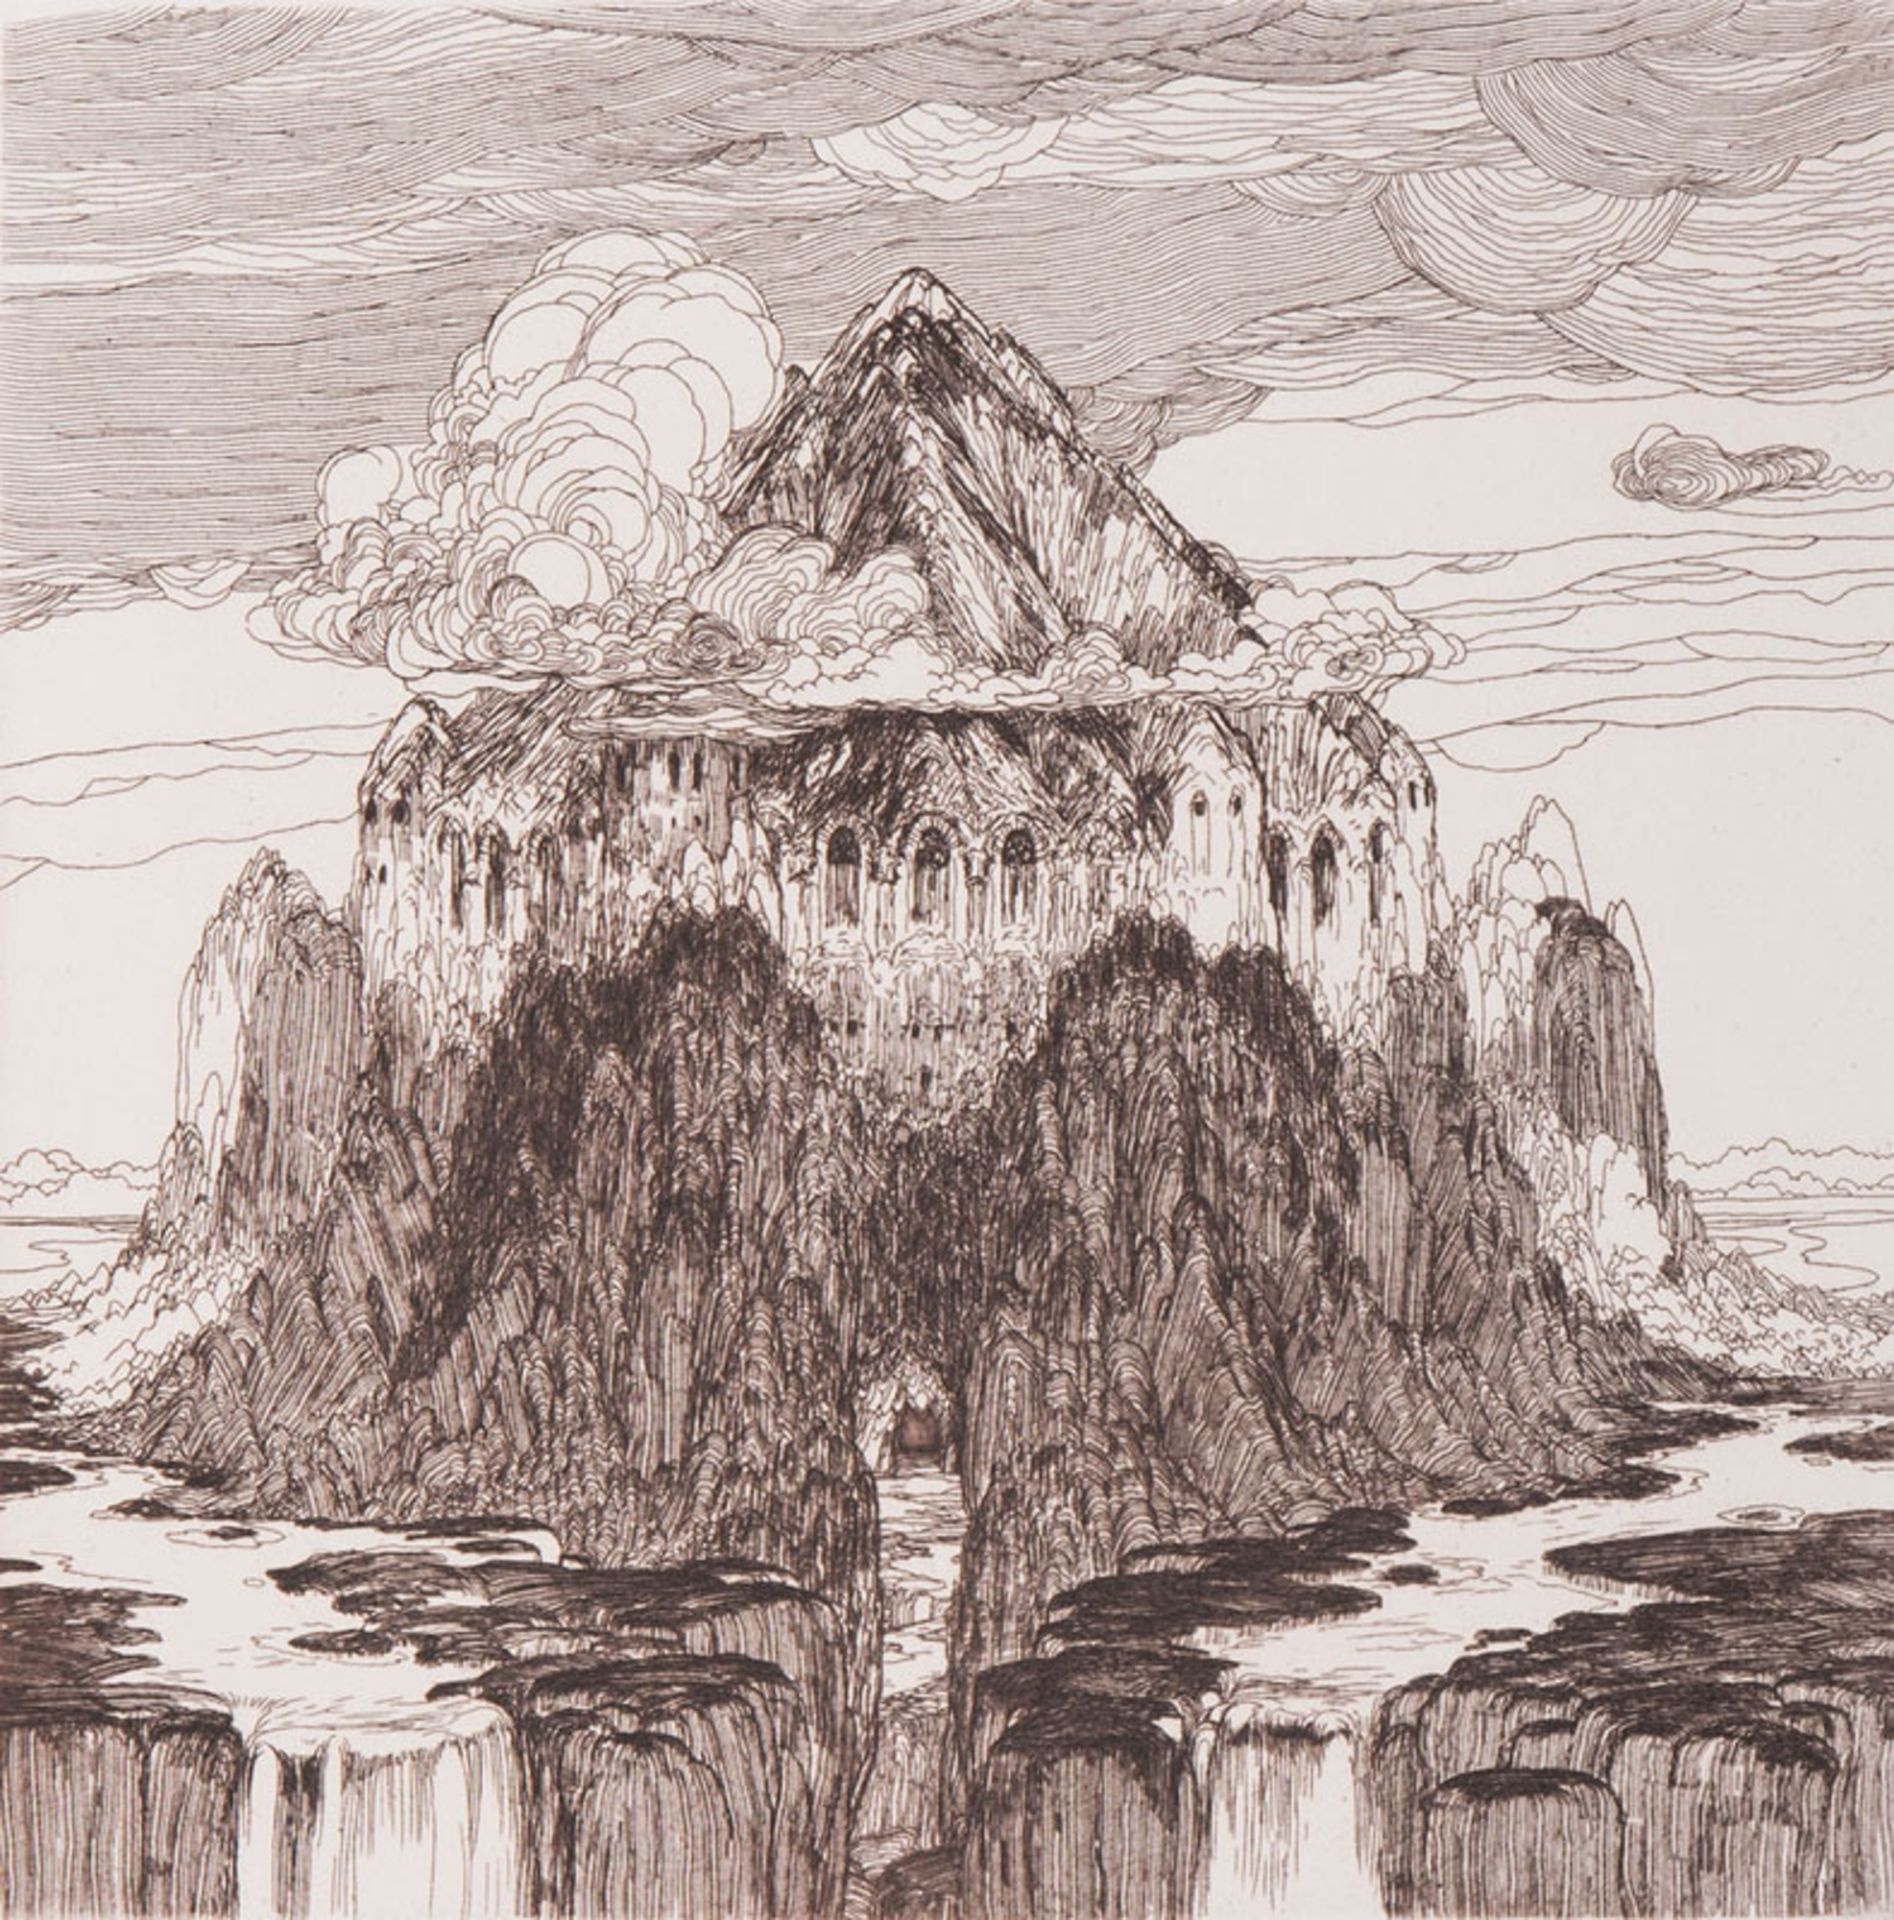 Hablik (Brüx/Böhmen 1881 - Itzehoe 1934) Fantastic Landscapes Six etchings, 19,5 x 19,5 cm, on the